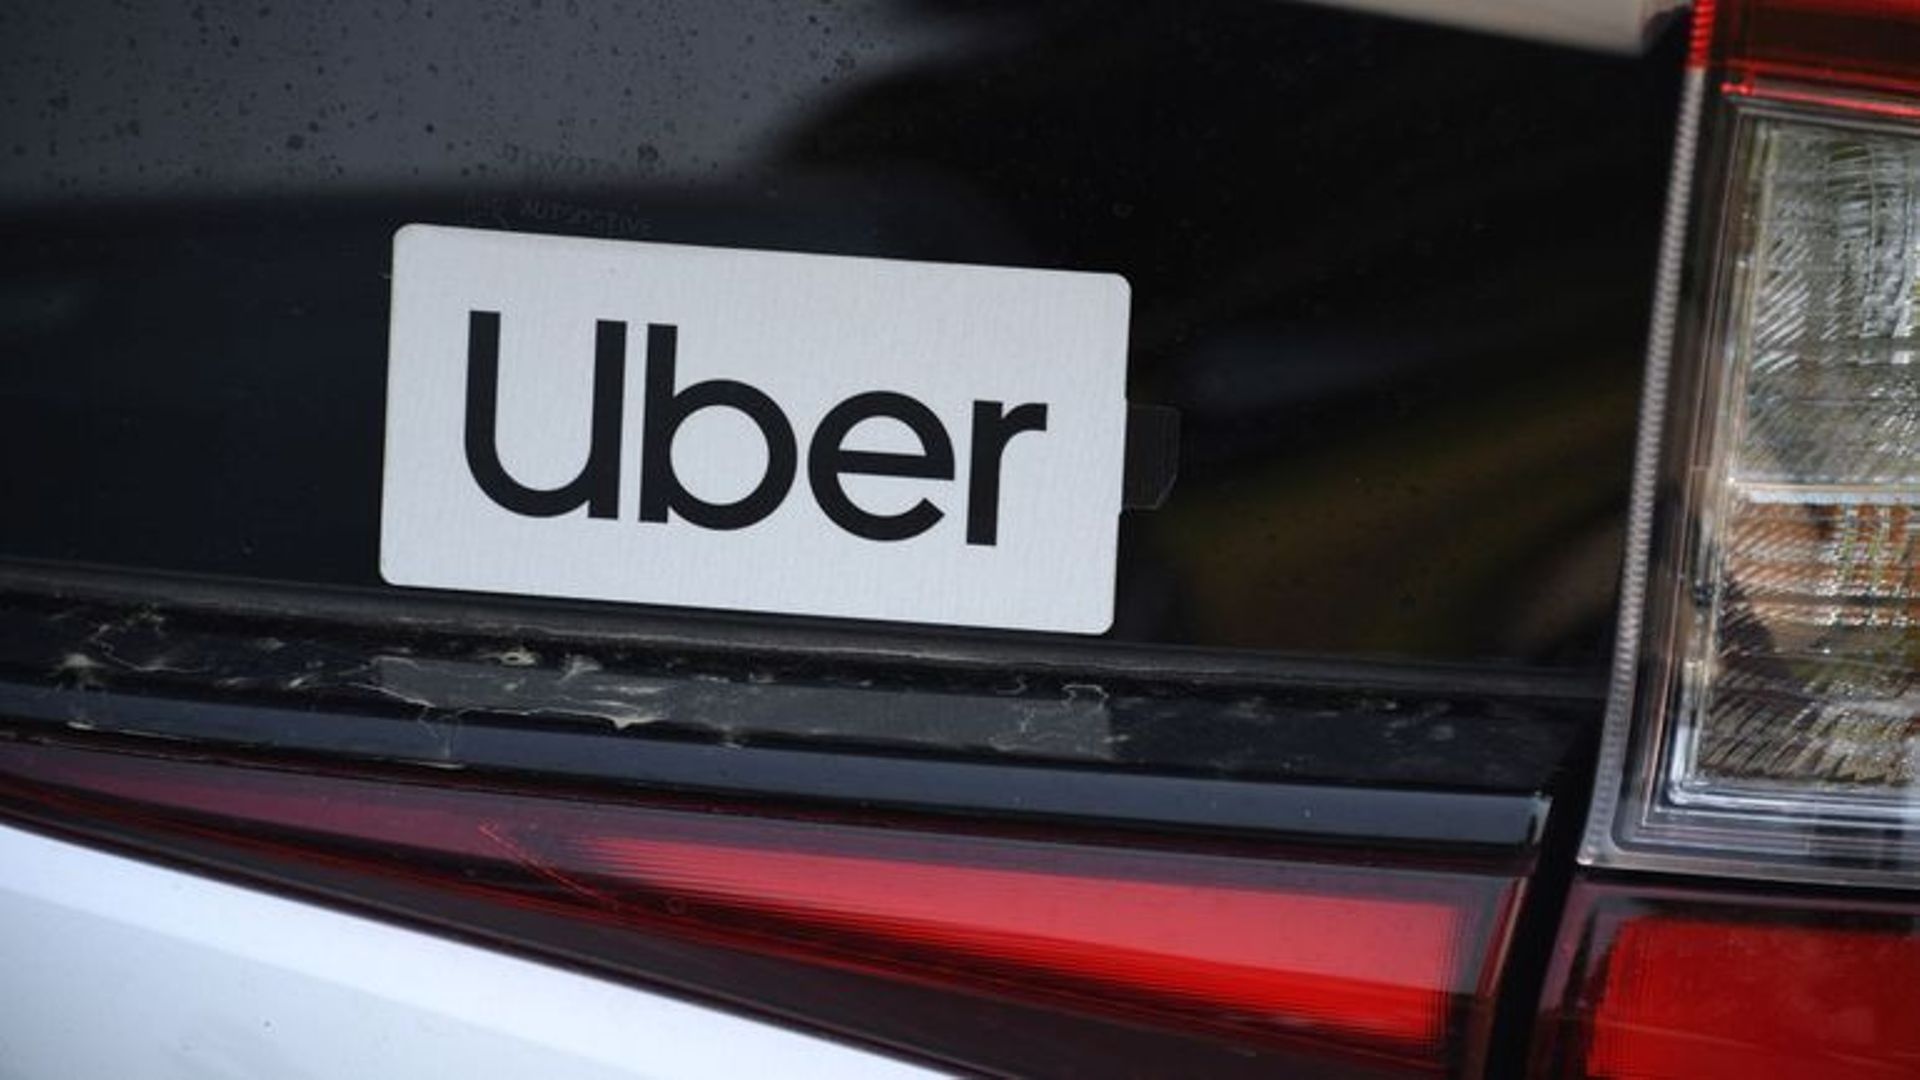 Cour d'appel de Bruxelles: "Uber est un service de taxi déguisé" selon la FeBet (2) © ROBYN BECK - AFP